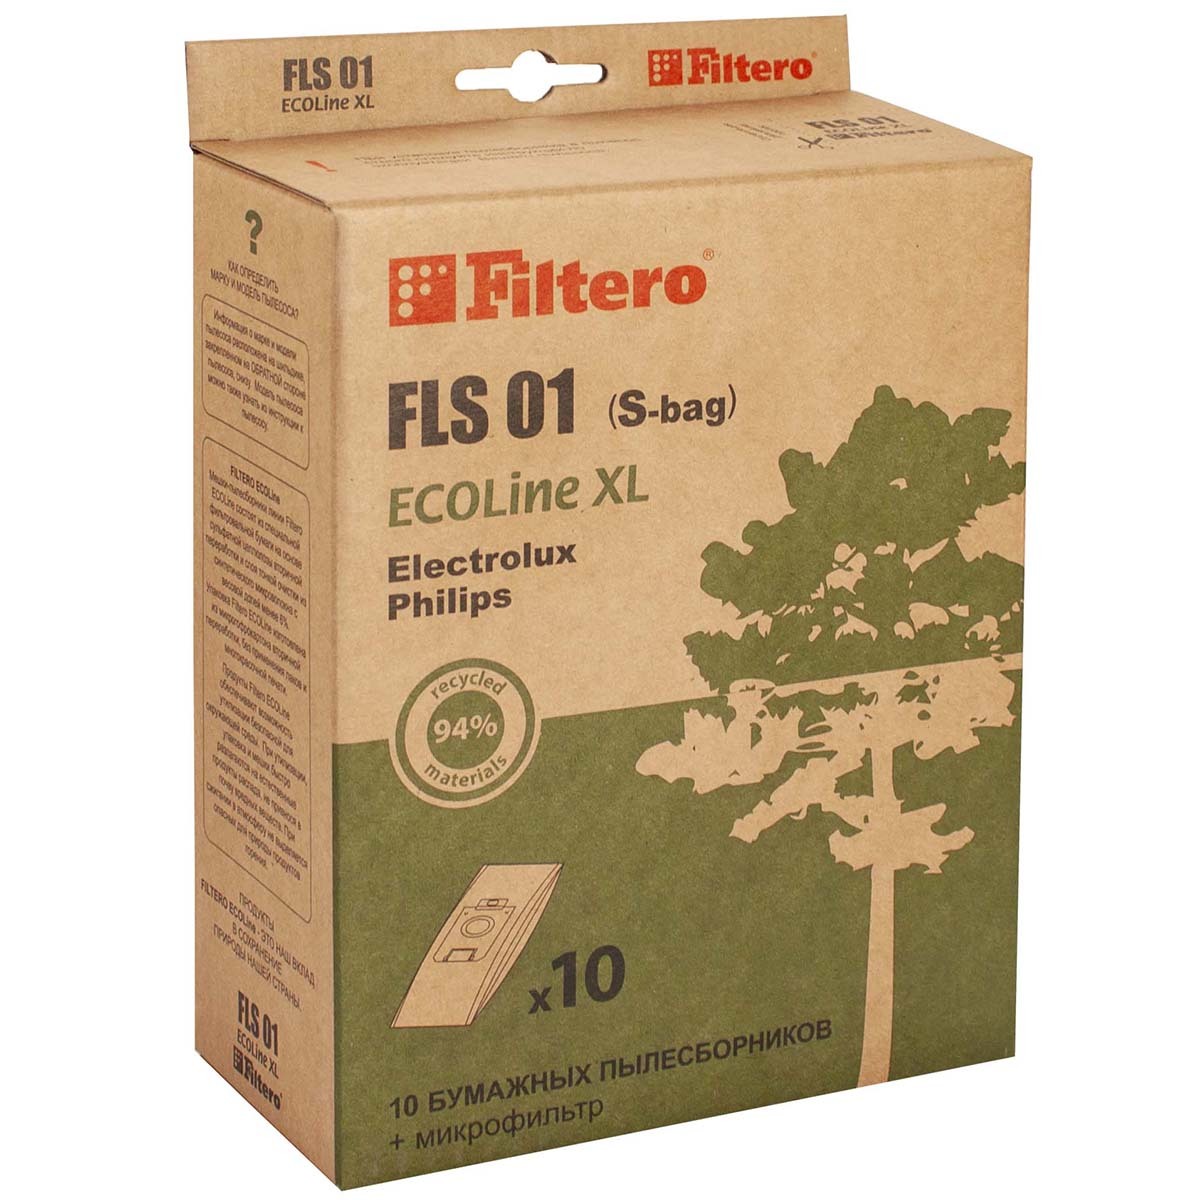 Пылесборники Filtero FLS 01 (S-bag) (10+) XL ECOLine мешки пылесборники filtero sie 01 xxl pack экстра